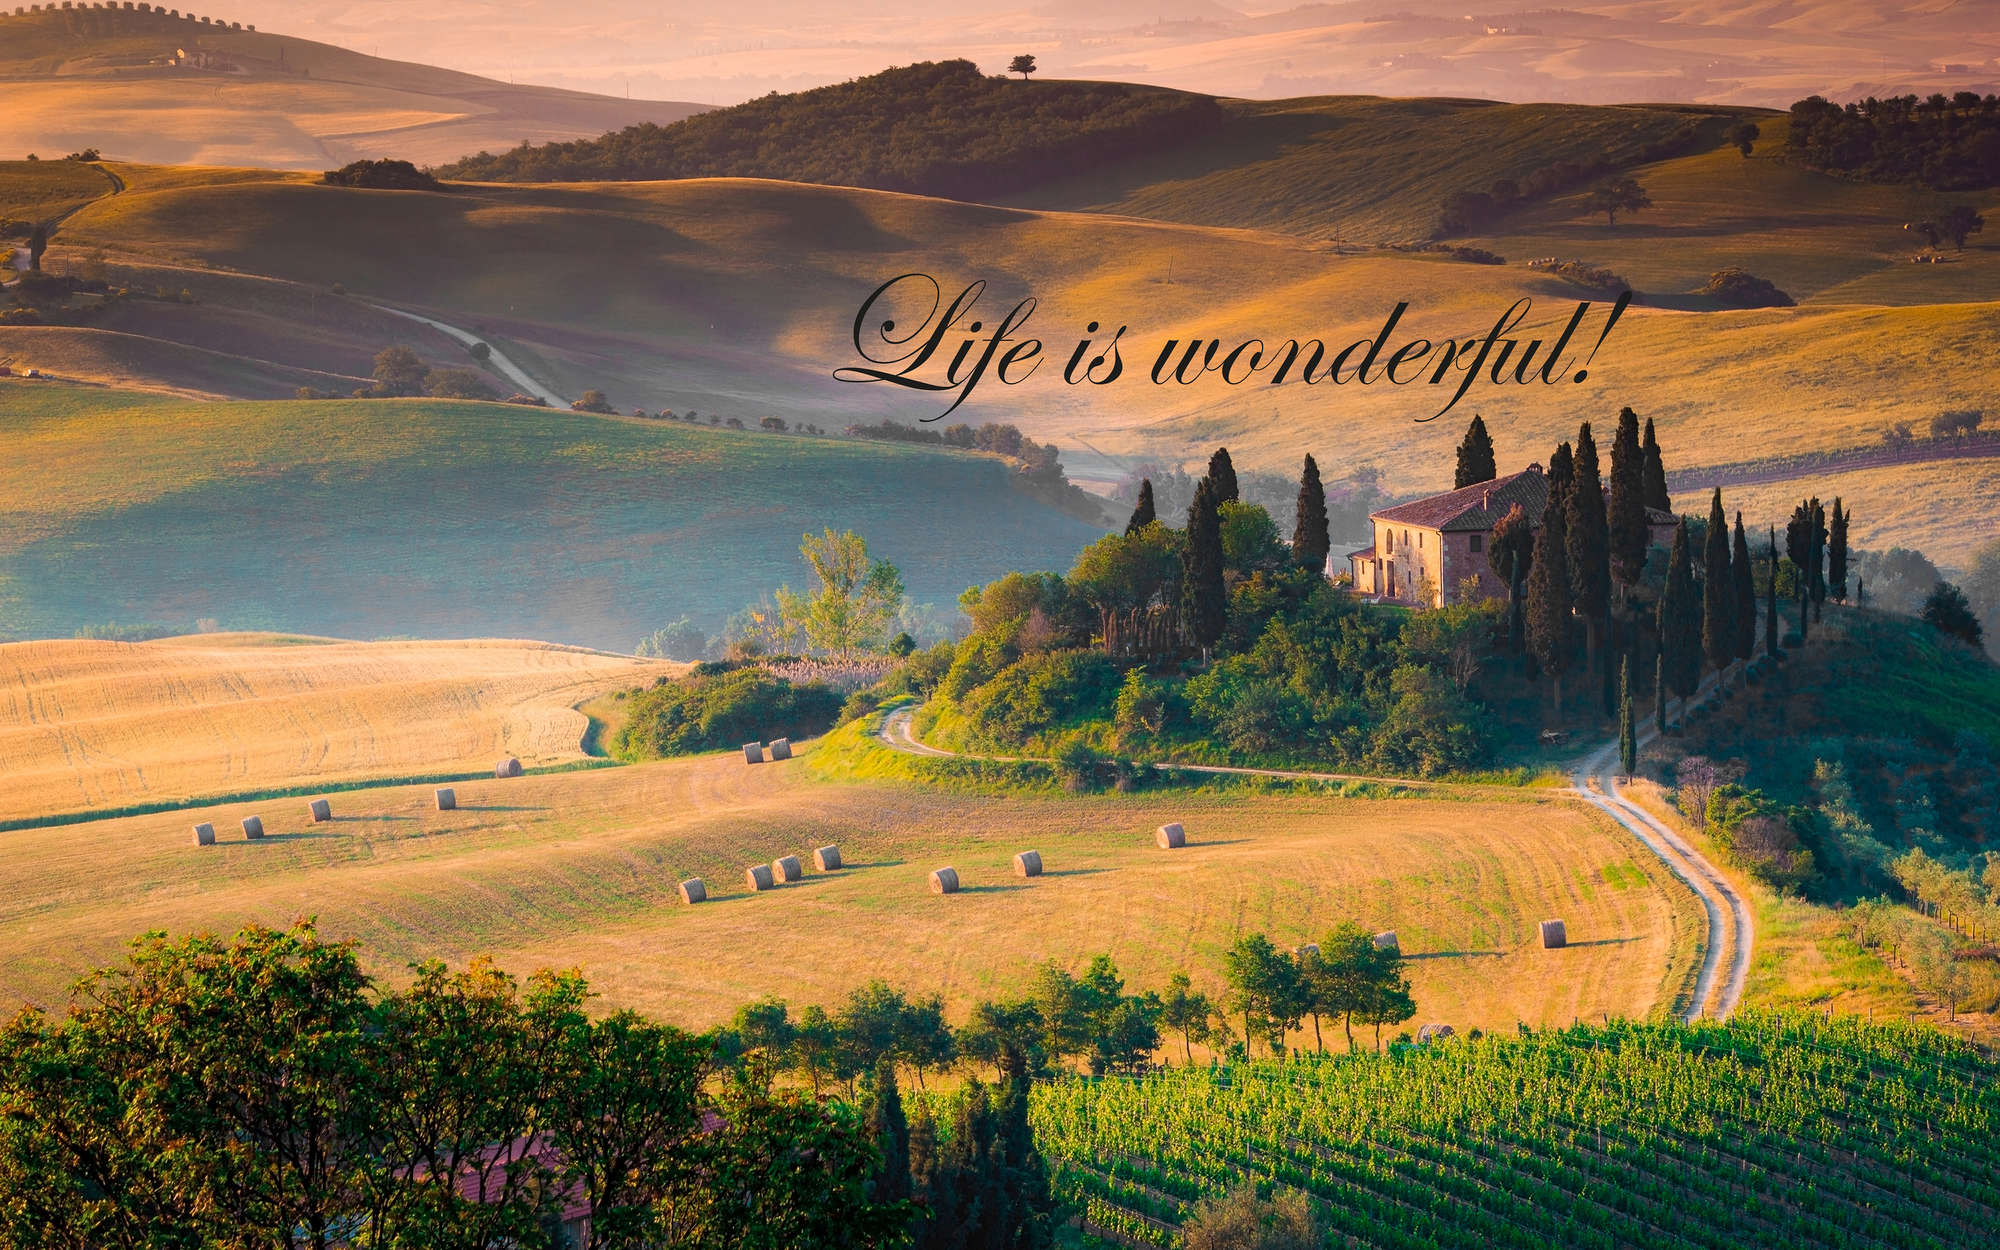             papiers peints à impression numérique Toscane avec inscription "Life is wonderful !" - intissé lisse premium
        